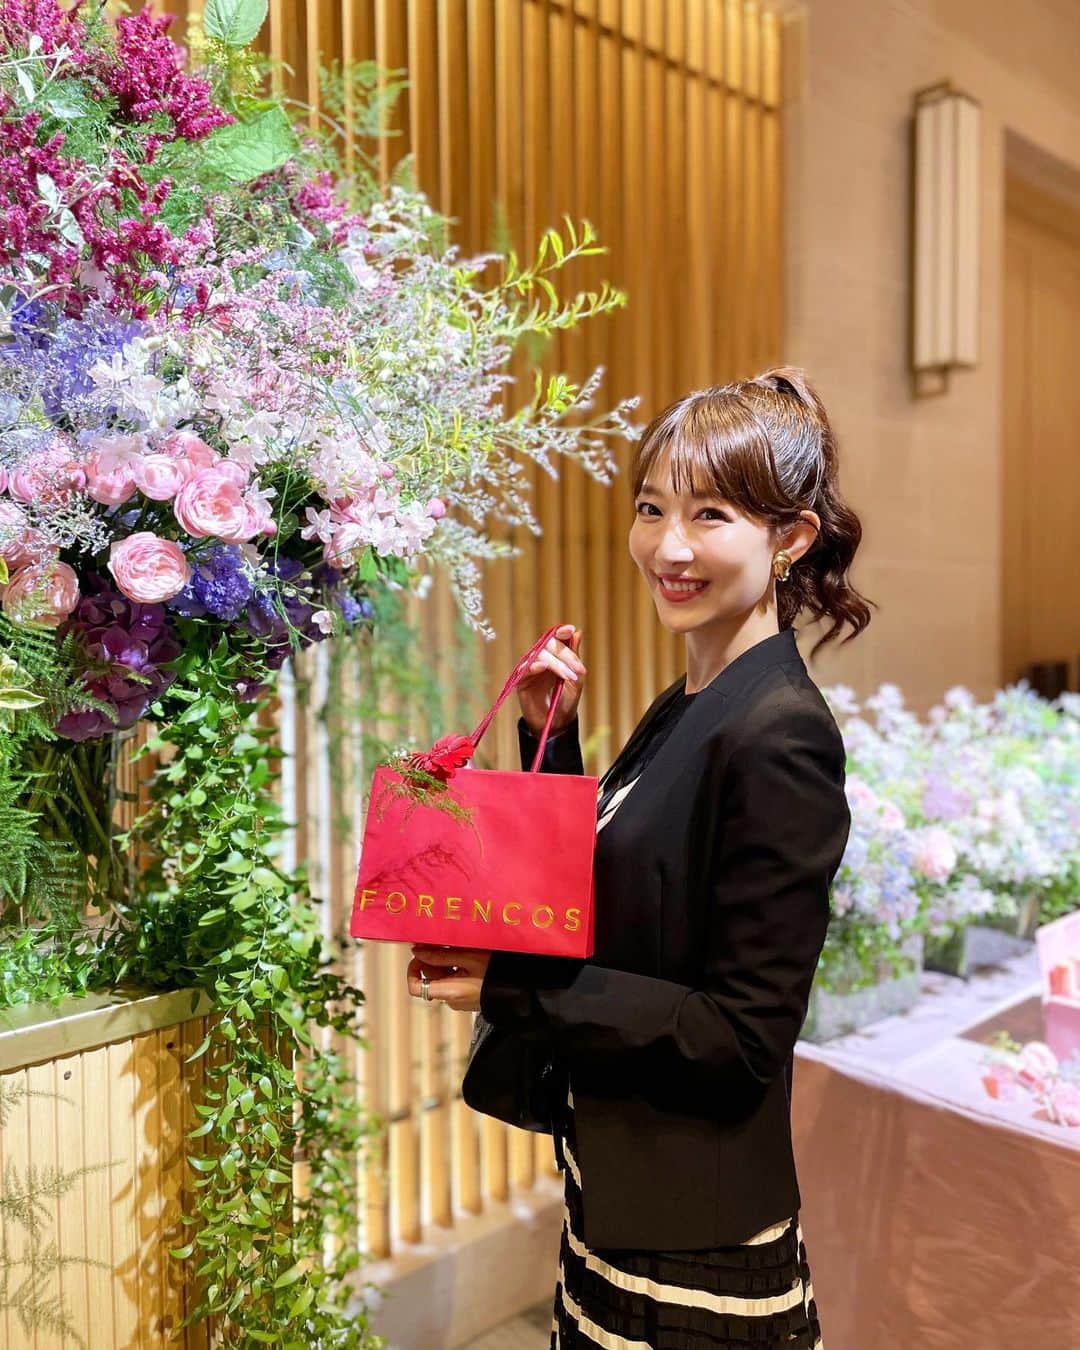 梅野舞のインスタグラム：「韓国で国民ティントと呼ばれているFORENCOSの 新作ティント『FORENCOS PURE FIXING TINT』 Launch Eventへ🥂✨✨🥂  私を楽しく咲かせるブロッサムコスメ「FORENCOS」の会場はお花がたくさん💐華やかで可愛い空間でした！！  新商品の『FORENCOS PURE FIXING TINT』全6色  日本の美容系インフルエンサーと共に テクスチャー・フィット感・持続力・カラー・形・価格などを熟考されて開発された様子もVTRで観ることができたり、  トークショーやメイク講座も行われました♬  6色どのカラーも可愛い❤️ その日の気分で ファッションで 楽しめそう♬  05番STOCKカラーがわたしのお気に入りかな♬  メイク崩れや色移りなく持続力のあるティント ★フィクシングティントの正しい付け方  1、唇の保護膜を形成するために塗ったあとに、 そのまま15〜30秒待つ⚠️ここがかなり重要  2、塗った後に、リップバームやリップオイルを付ける  ※まるでマシュマロのような仕上がりで乾燥せず、 フィックスされます✨  メイクの中で1番リップが好き❤️ フィクシングティント楽しみたいと思います💋  #FORENCOS#フォレンコス#フィクシングティント#マシュマロティント #国民ティント#ローンチ#ローンチイベント#韓国発#コスメ#lips #liptint #tint#make#makeup #instagram#instagood」